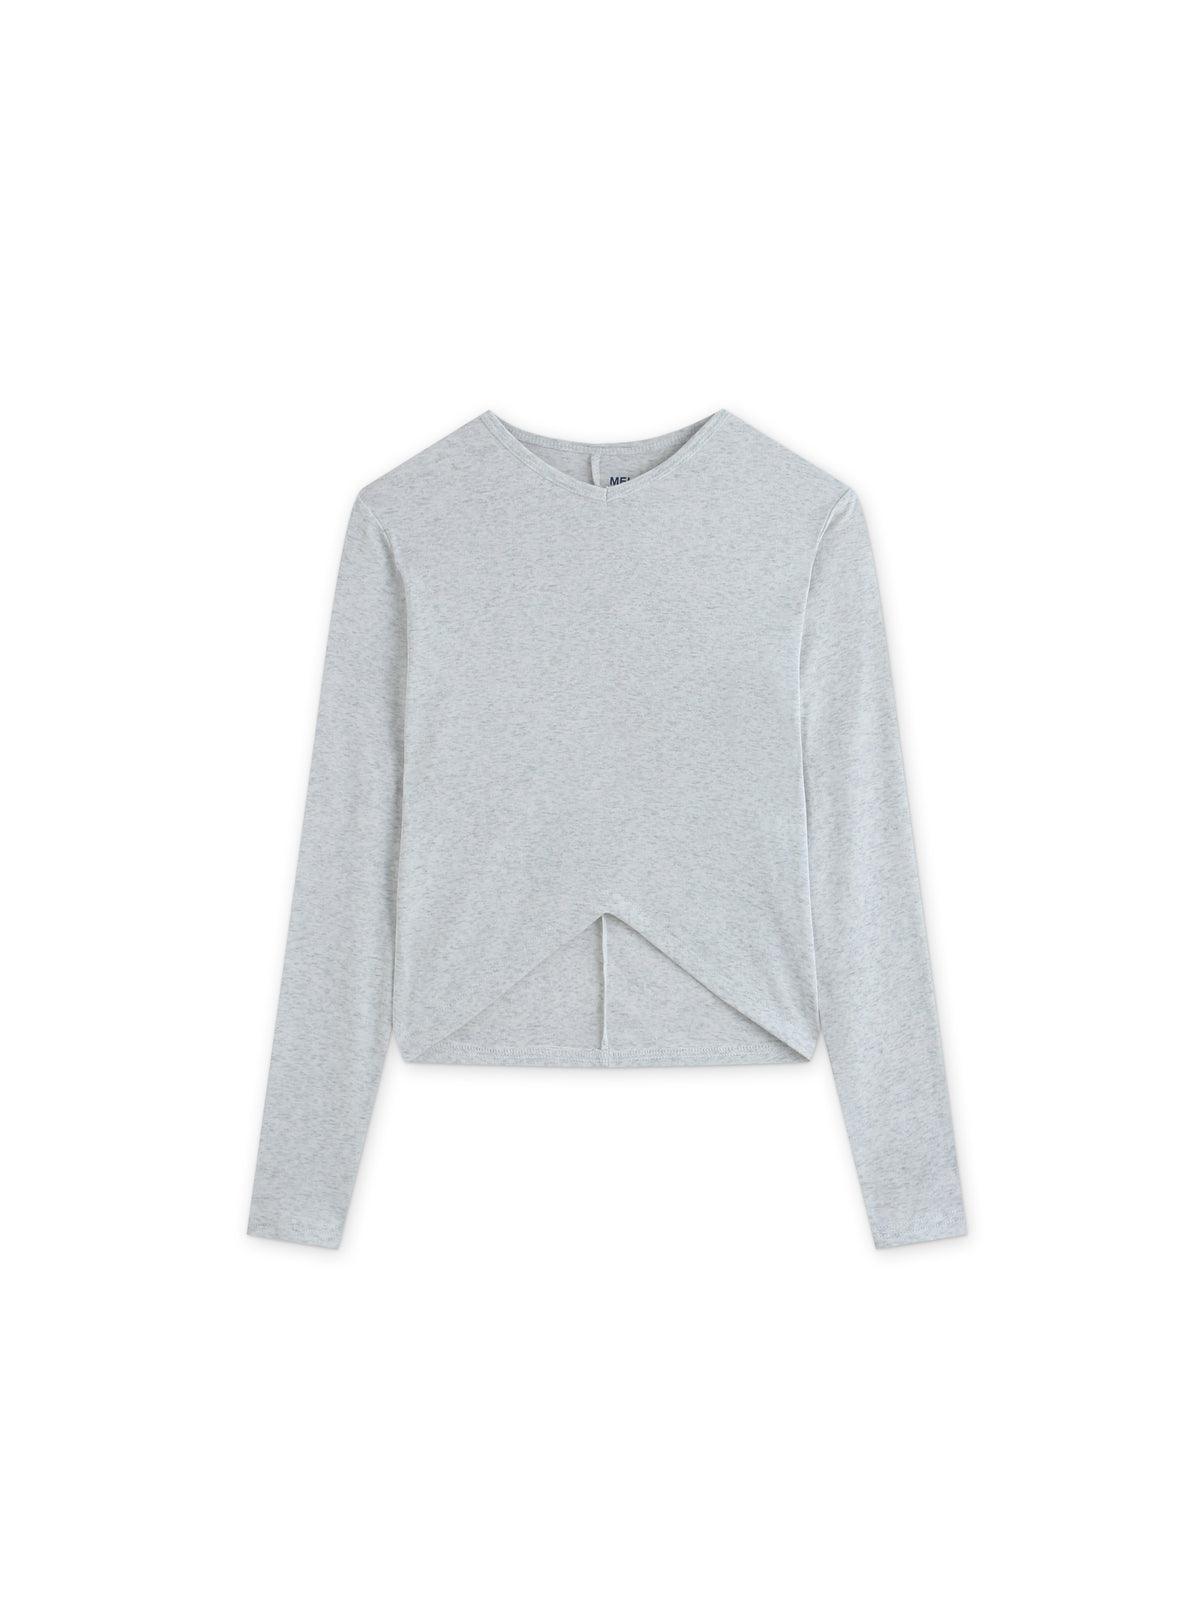 V Bottom T-Shirt-Heathered Grey